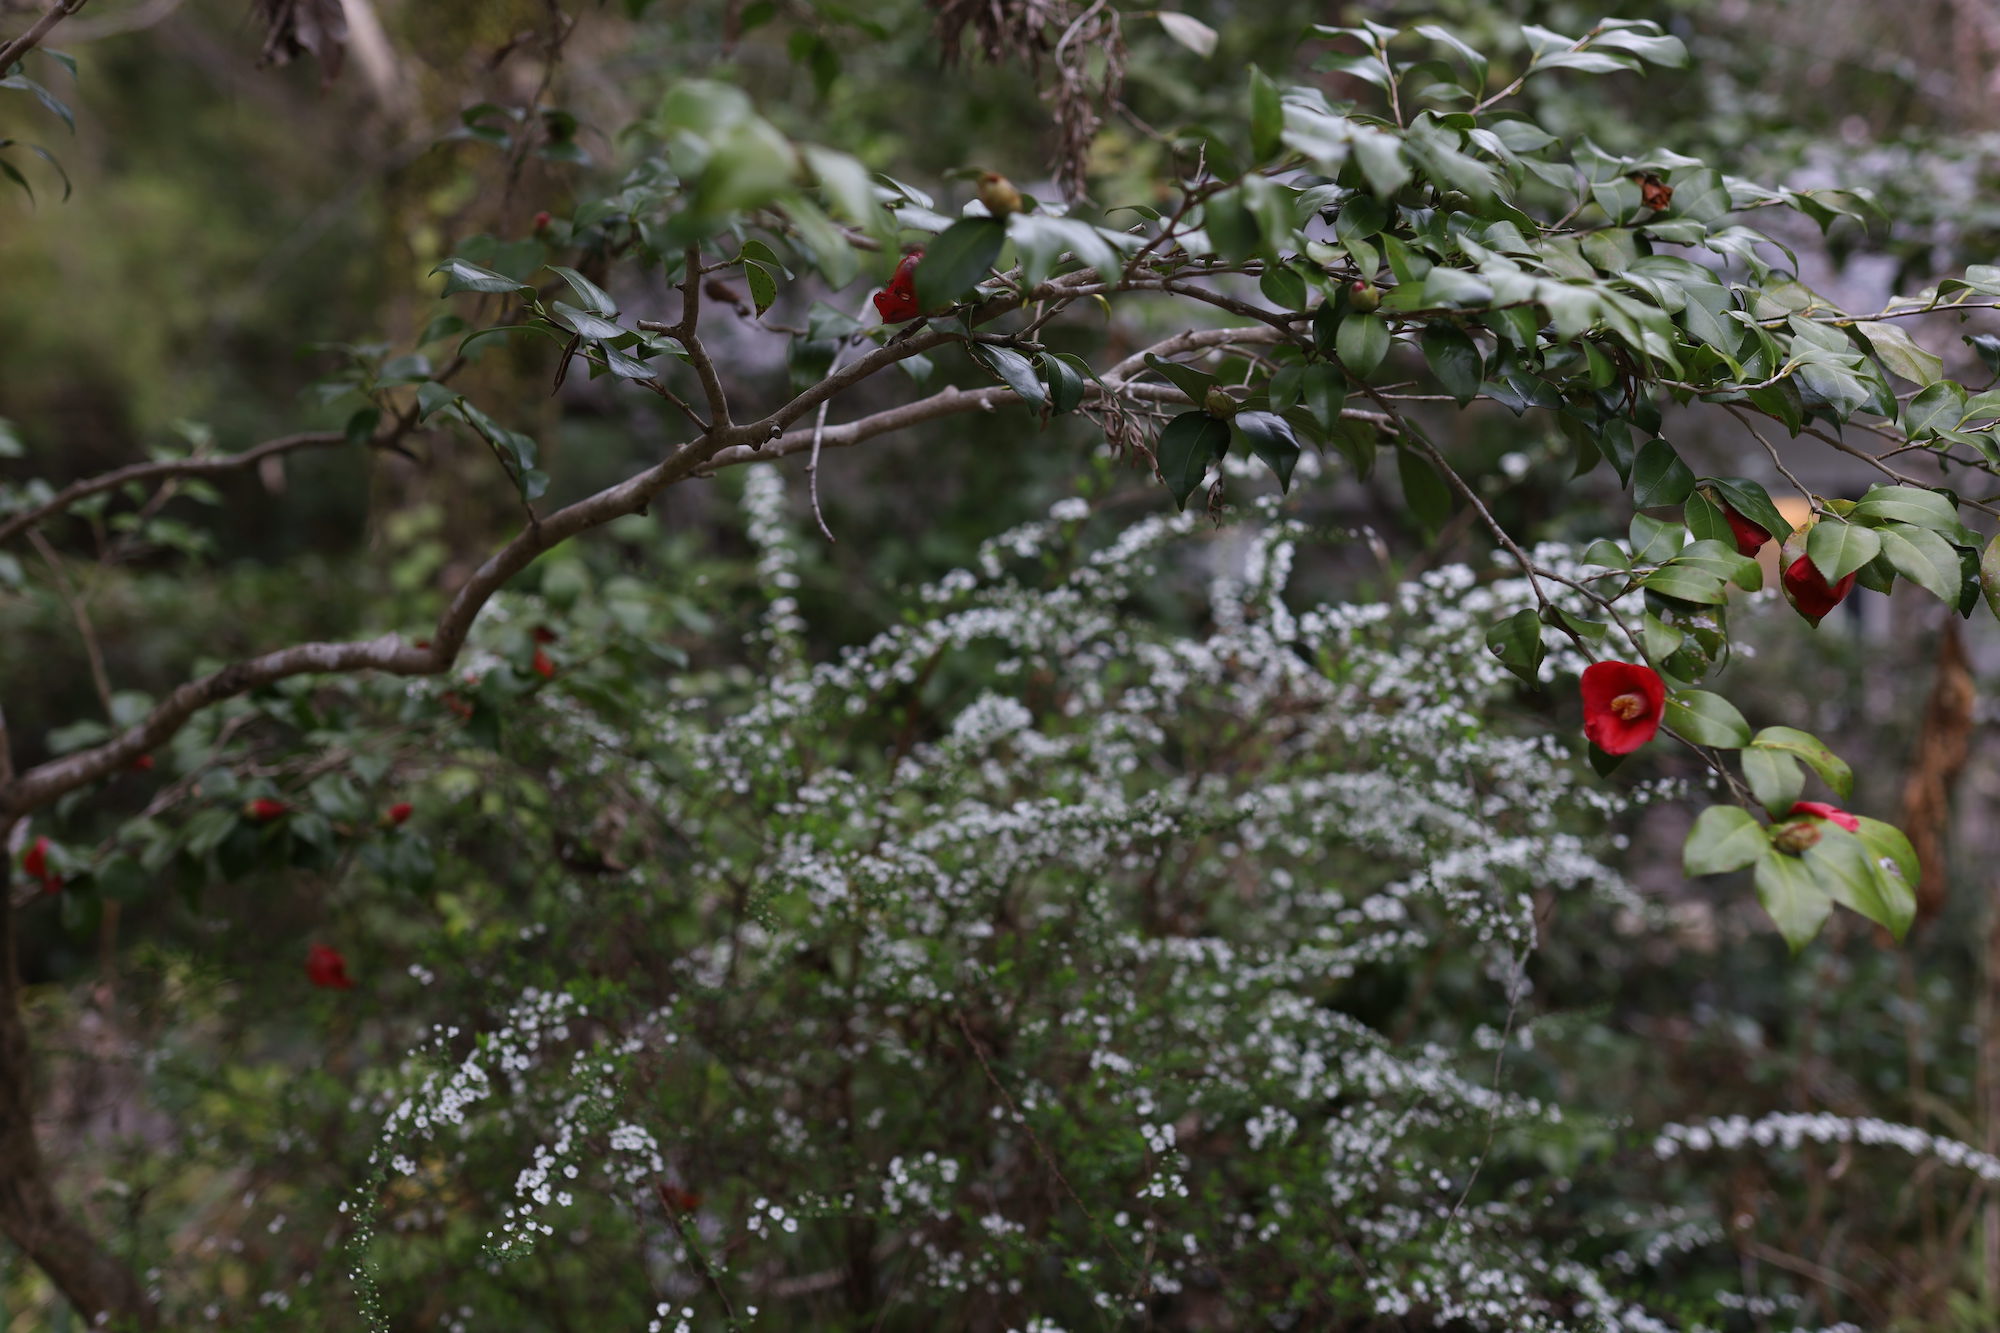  細川家の庭の風景。満開の藪椿と雪柳。